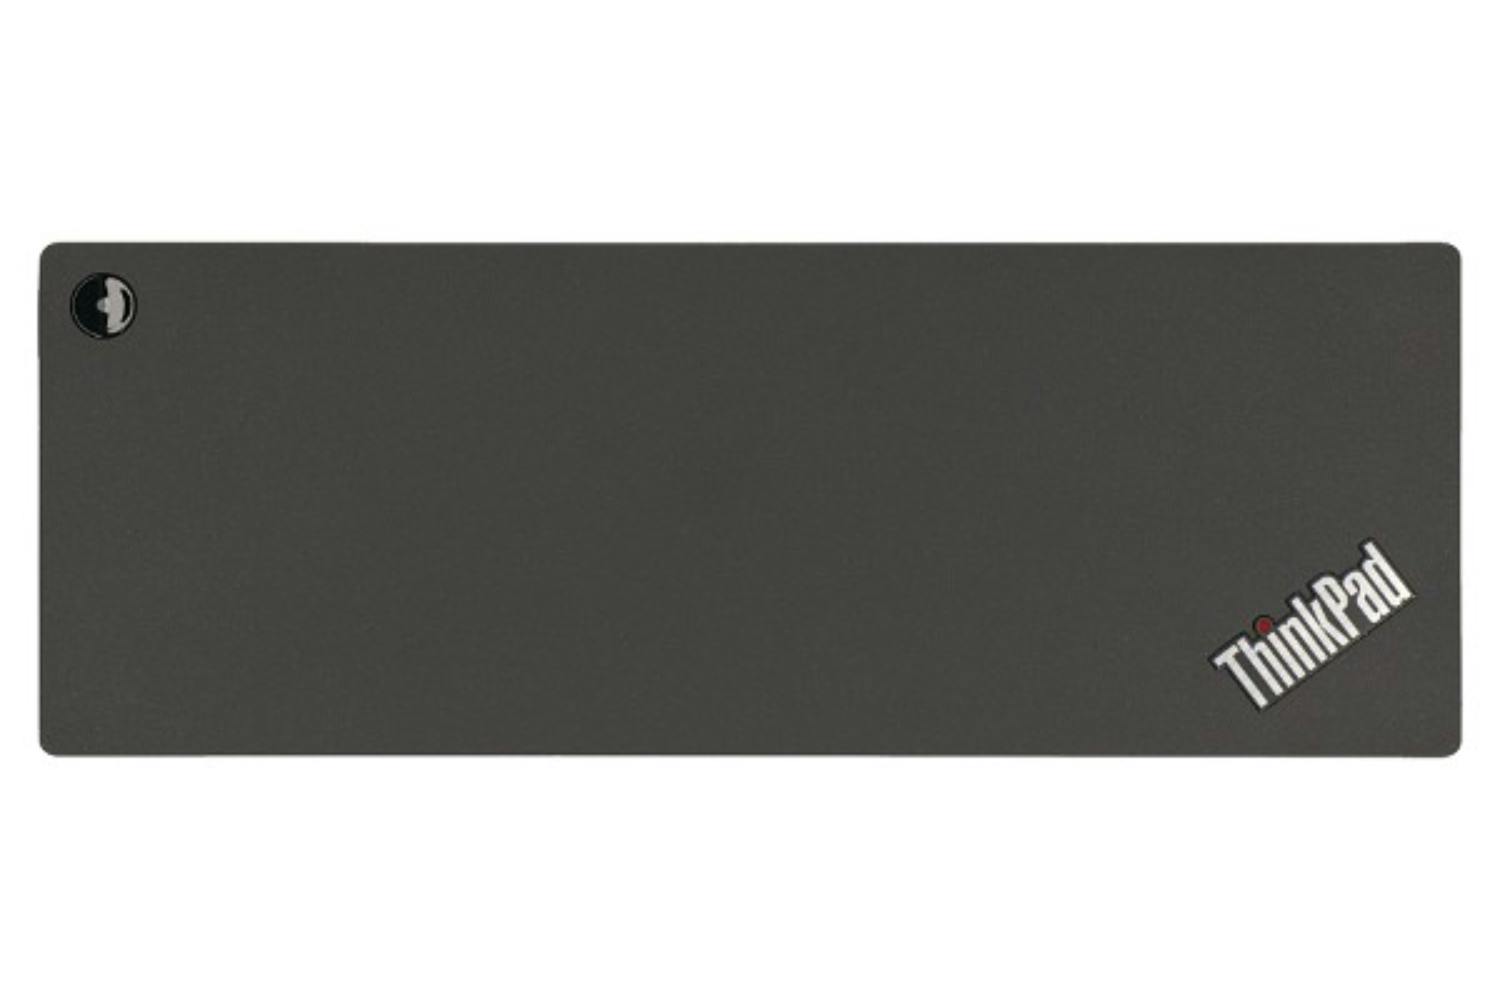 Lenovo 40AN0135CH 135W ThinkPad Thunderbolt 3 Dock